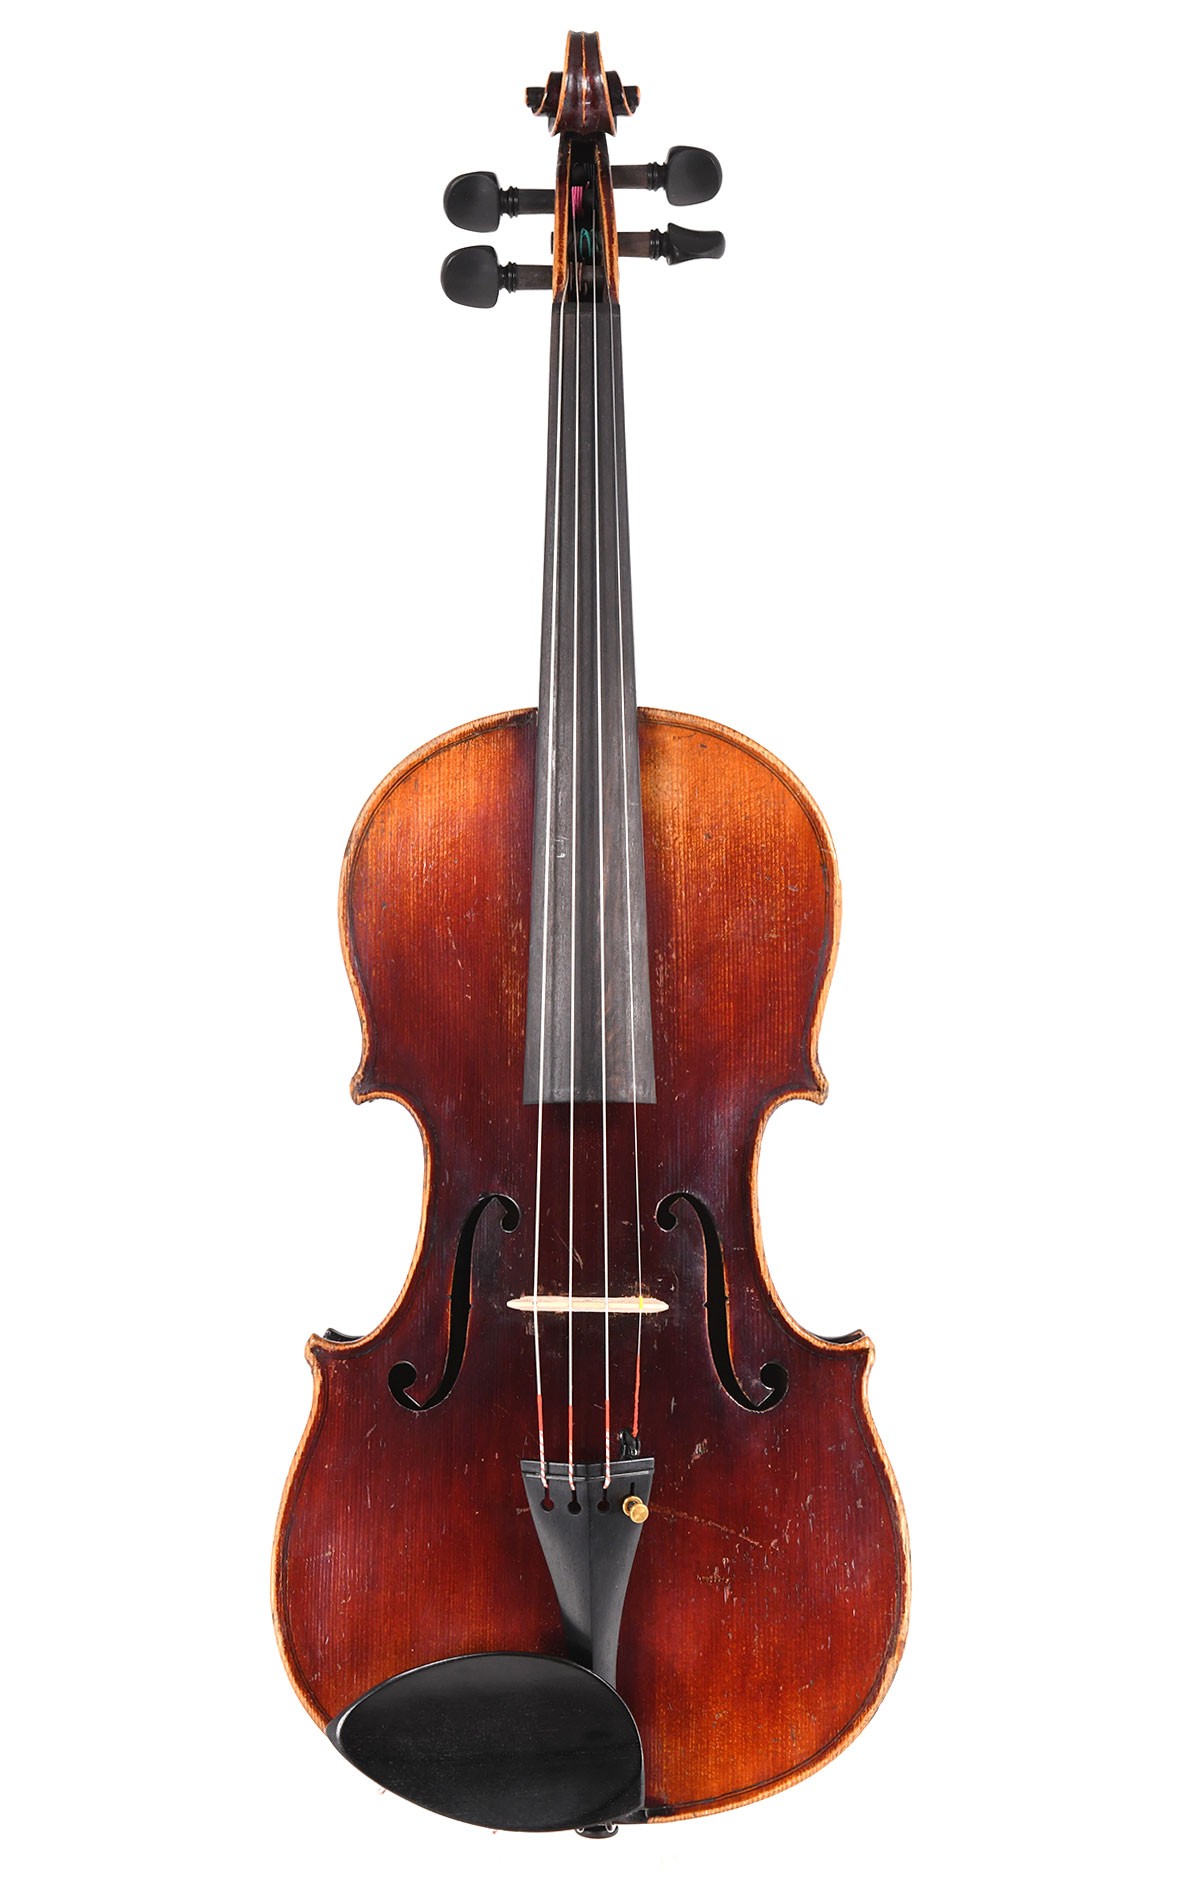 Neuner & Hornsteiner Mittenwald violin, c.1860